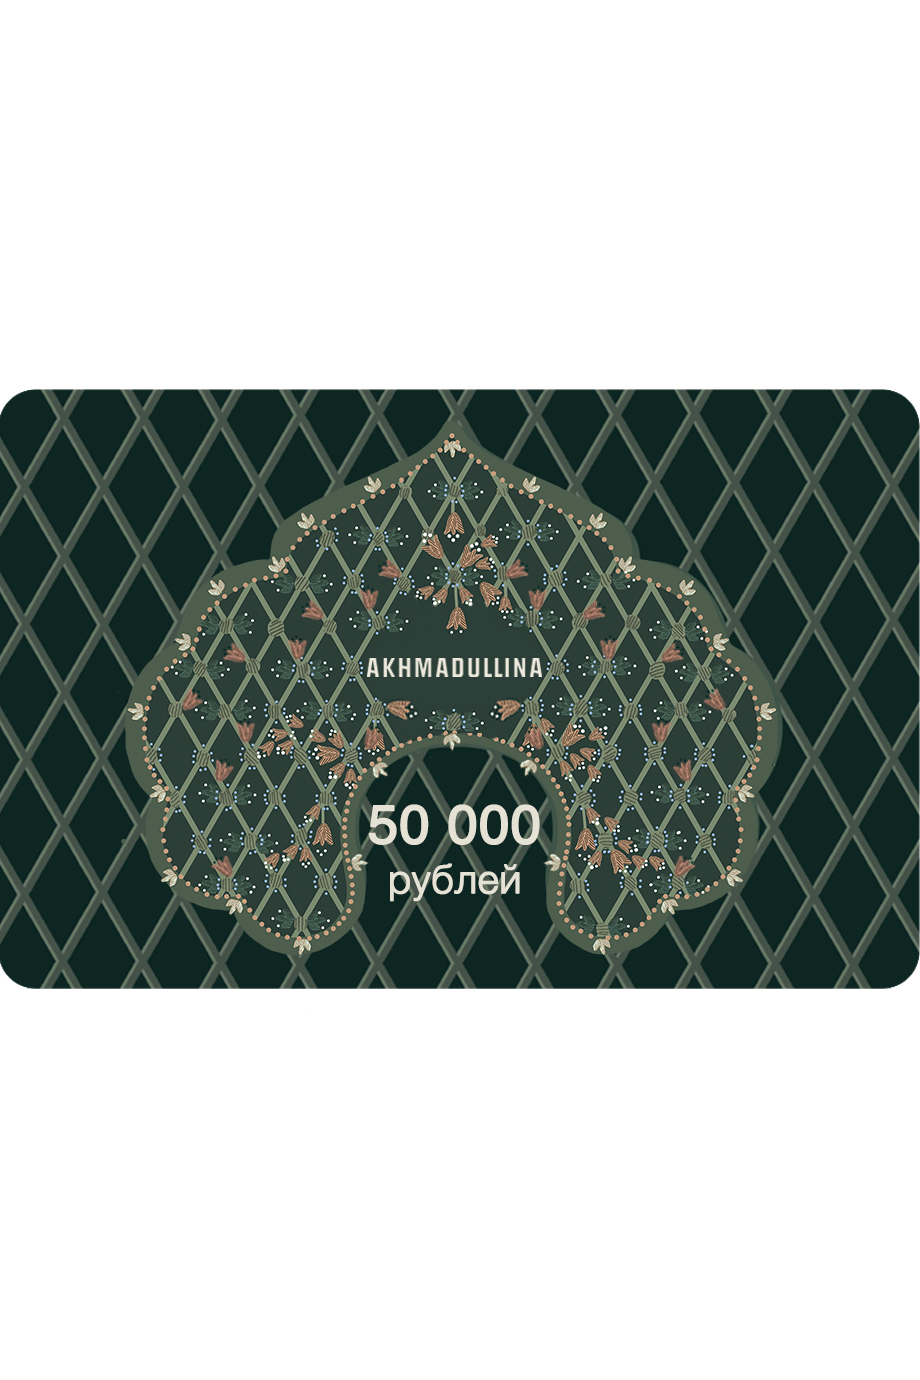 Подарочный сертификат 50 000 руб.